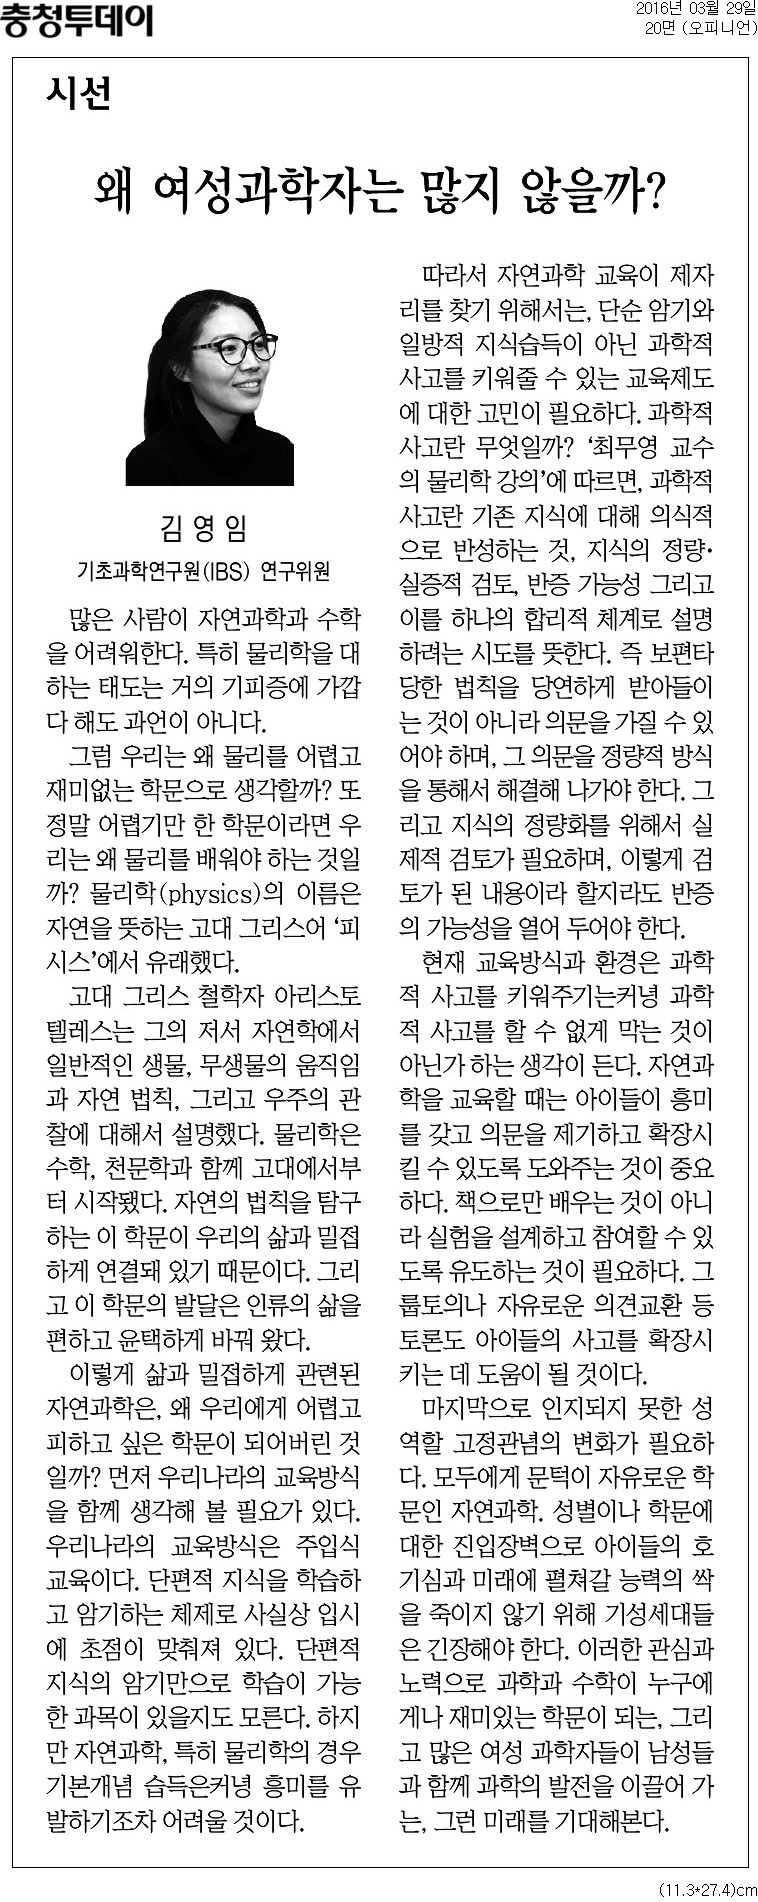 물리학 교육현황 관련 신문기사 - 충청투데이 (2016년 3월 29일) 사진